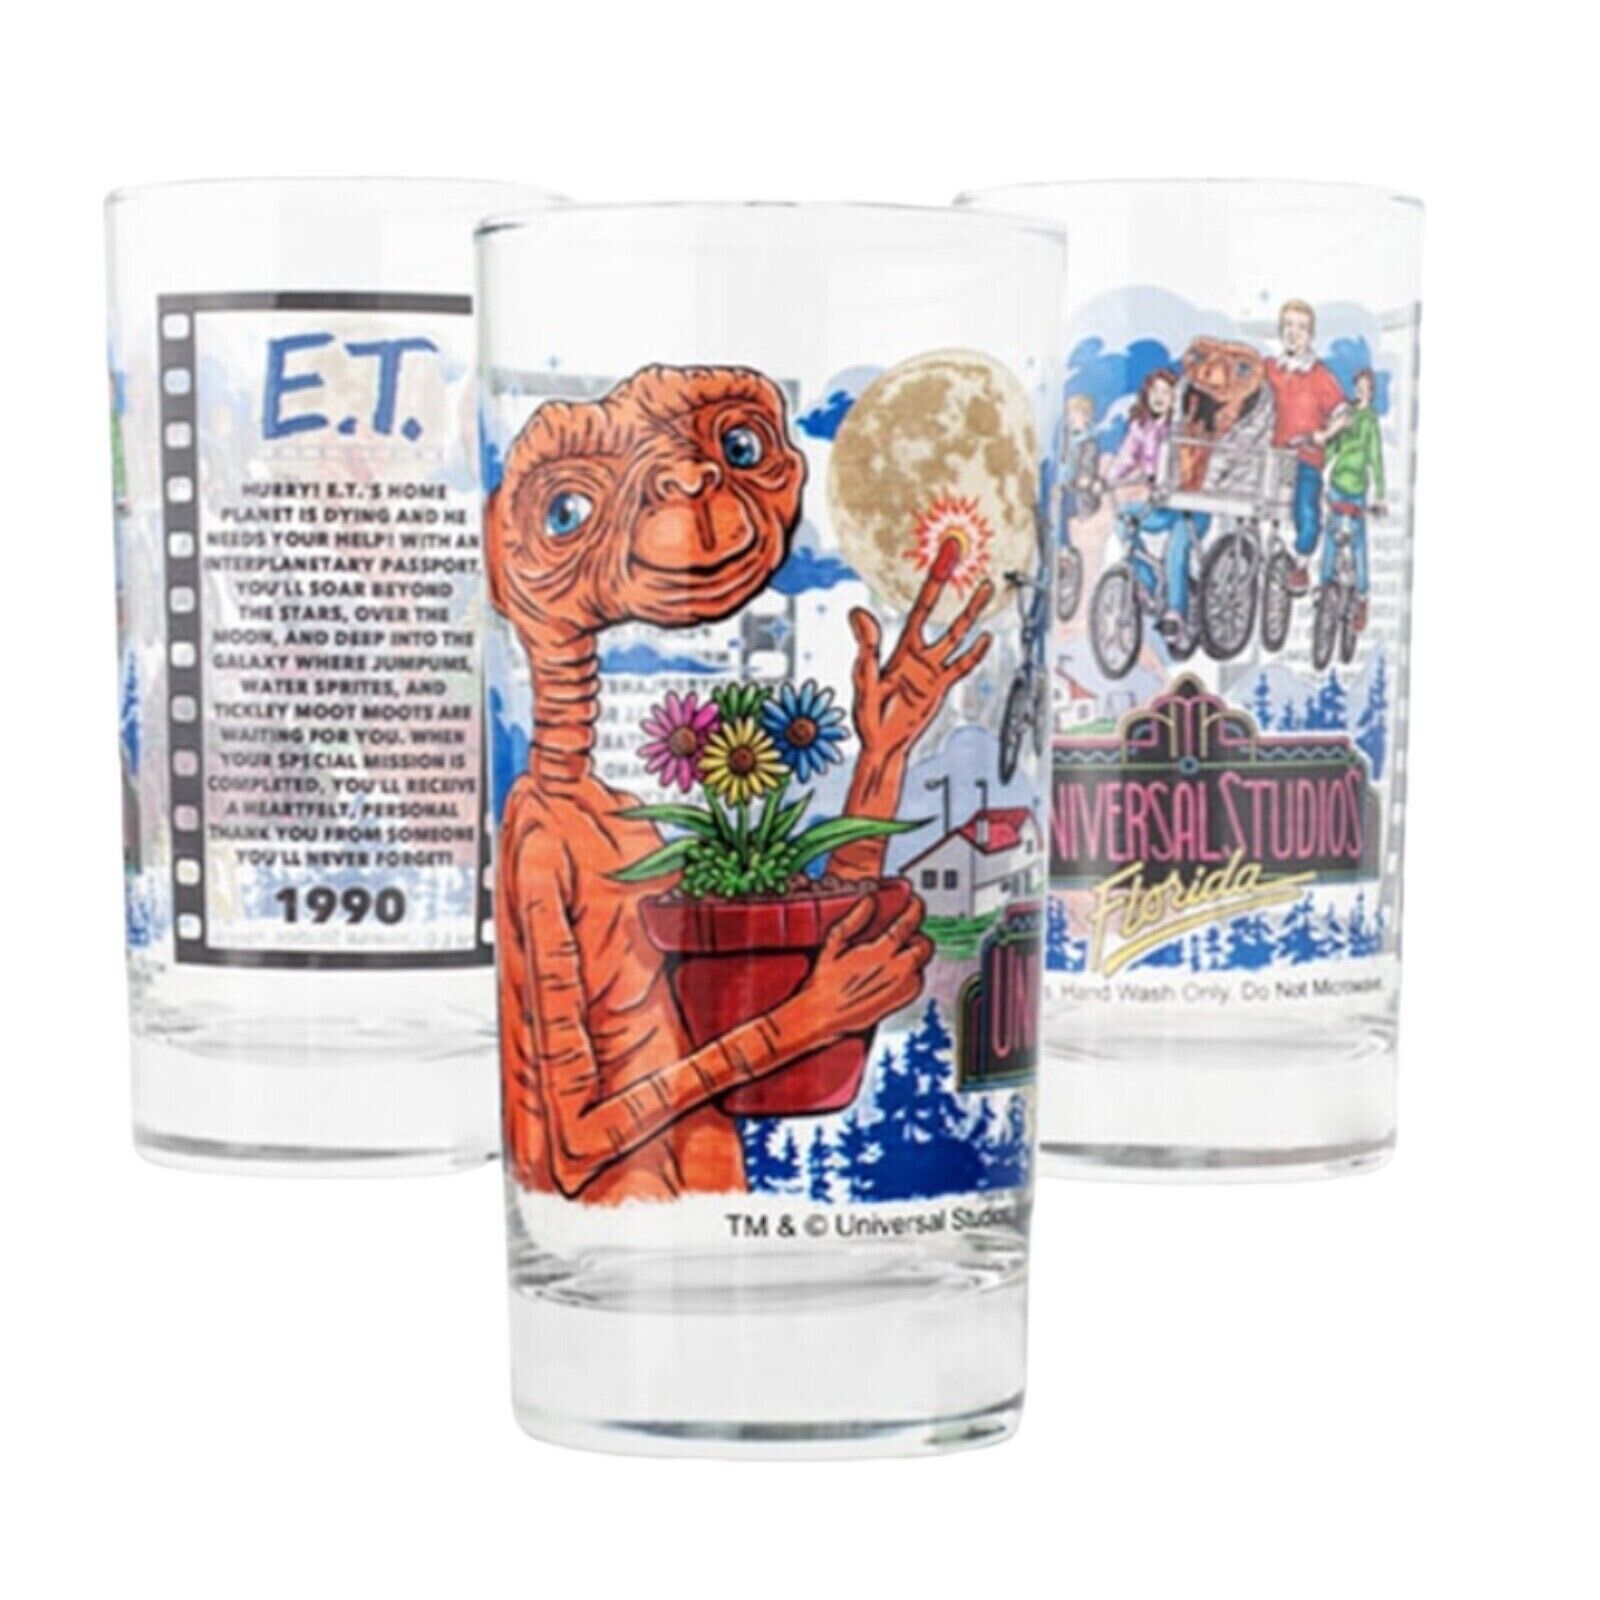 Universal Studios Retro E.T. Adventure Collectible Glass